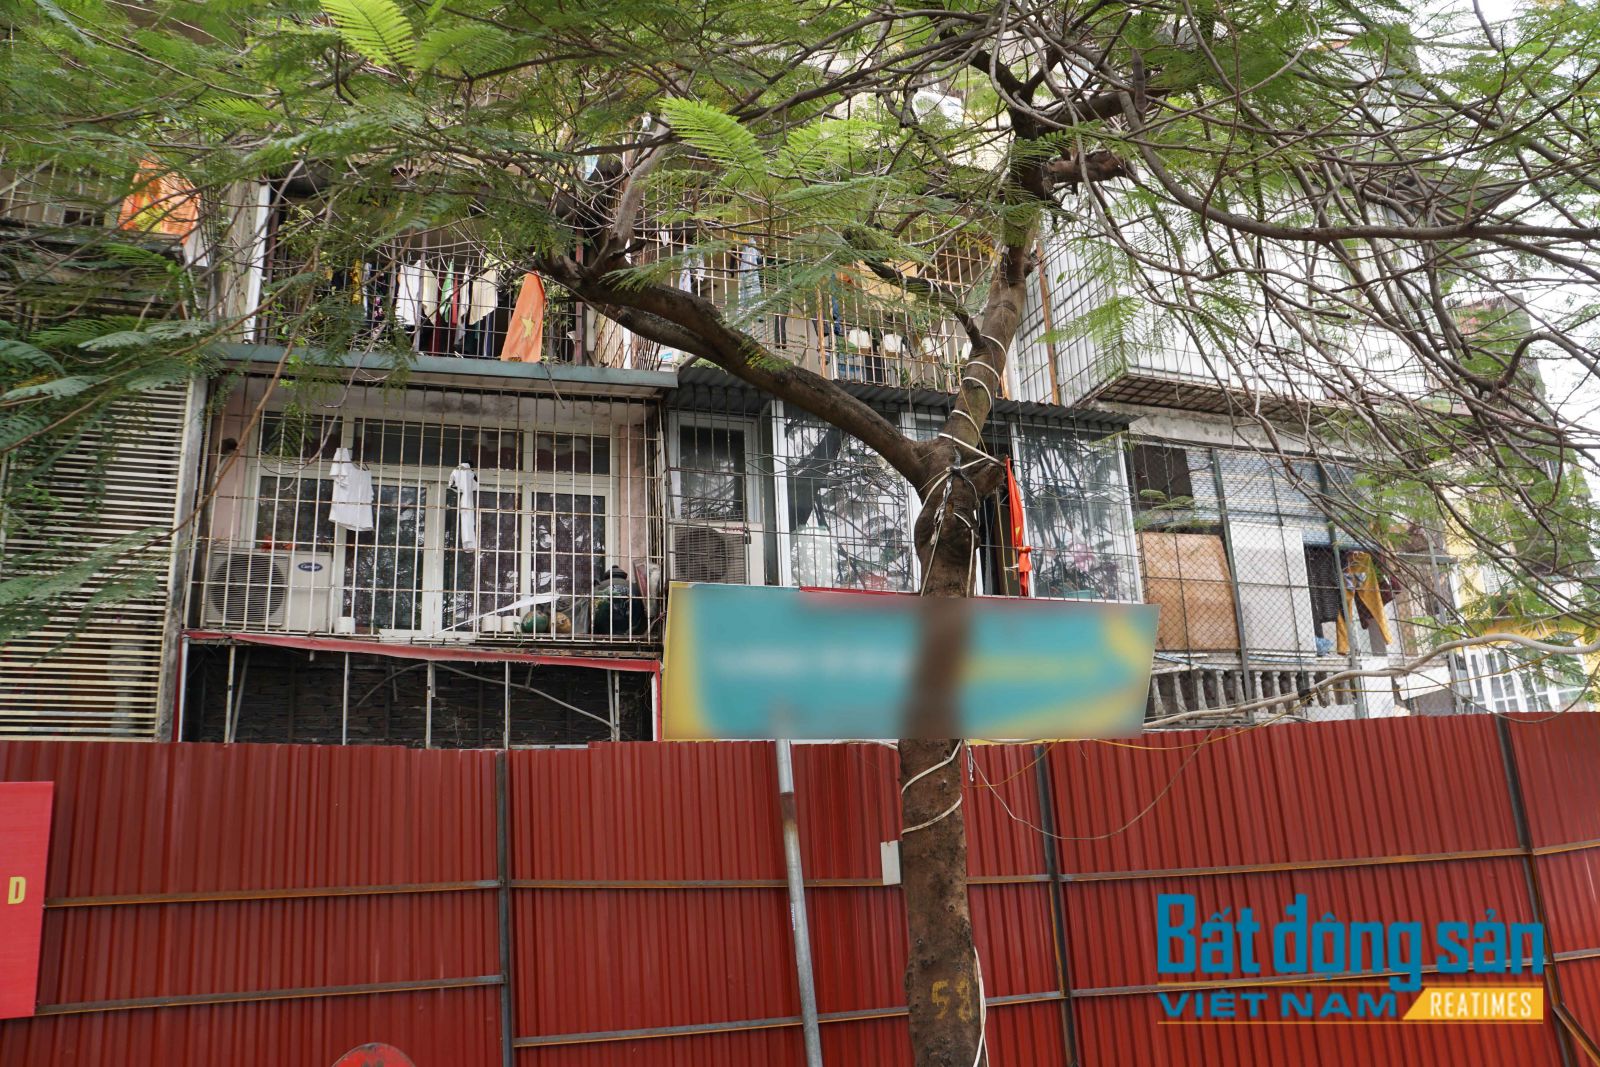 Reatimes, Tùng Dương, Nhà G6A Thành Công, quây tôn nhà G6A, cải tạo chung cư cũ Hà Nội